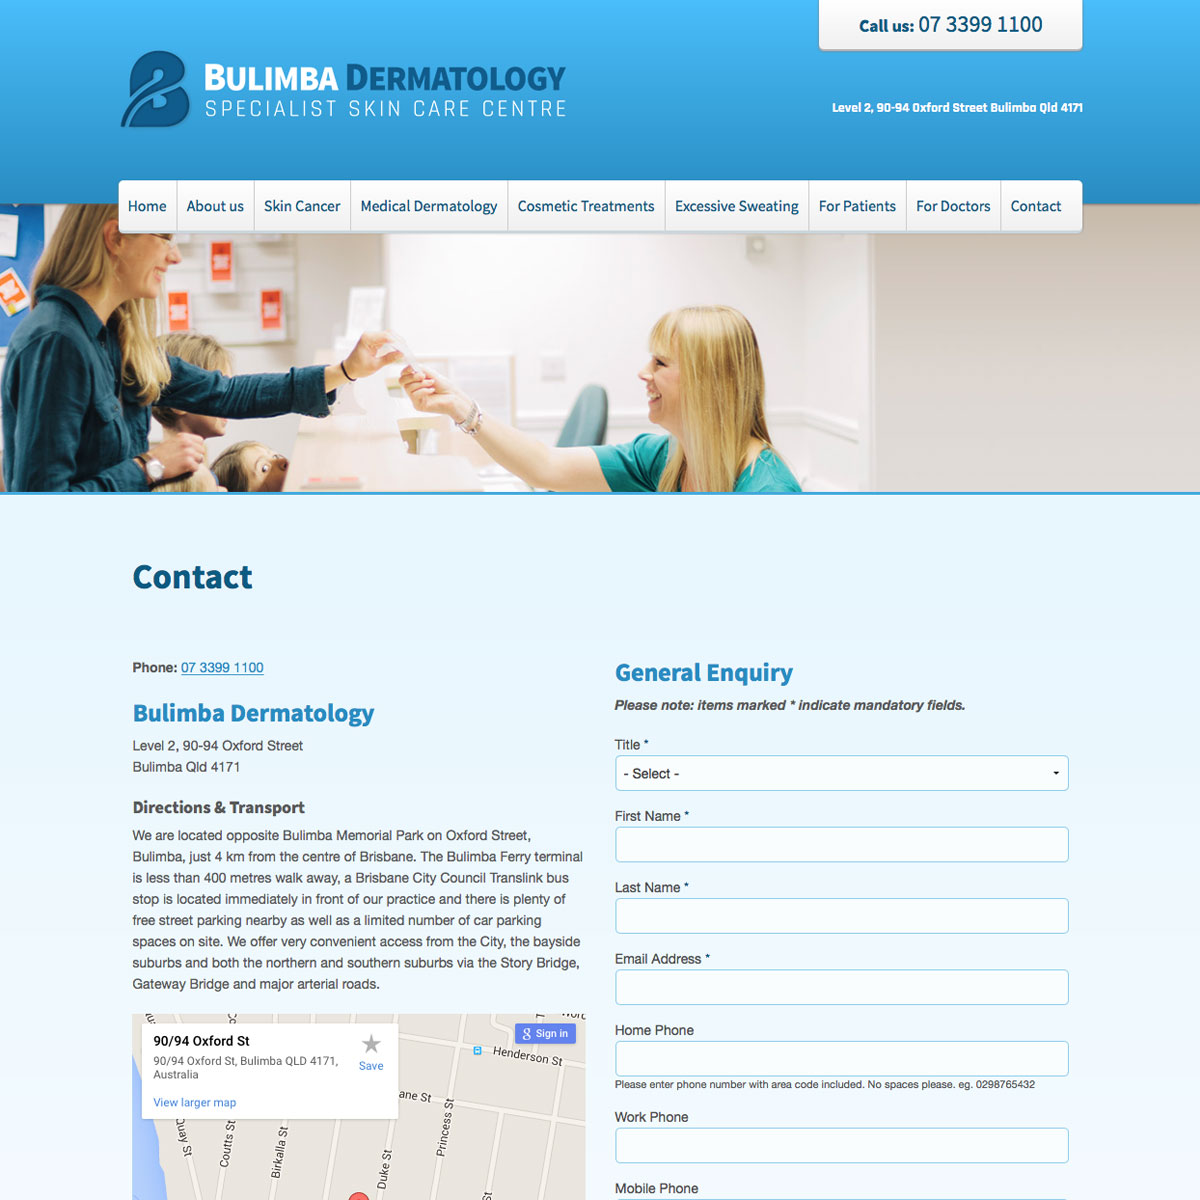 Bulimba Dermatology Contact